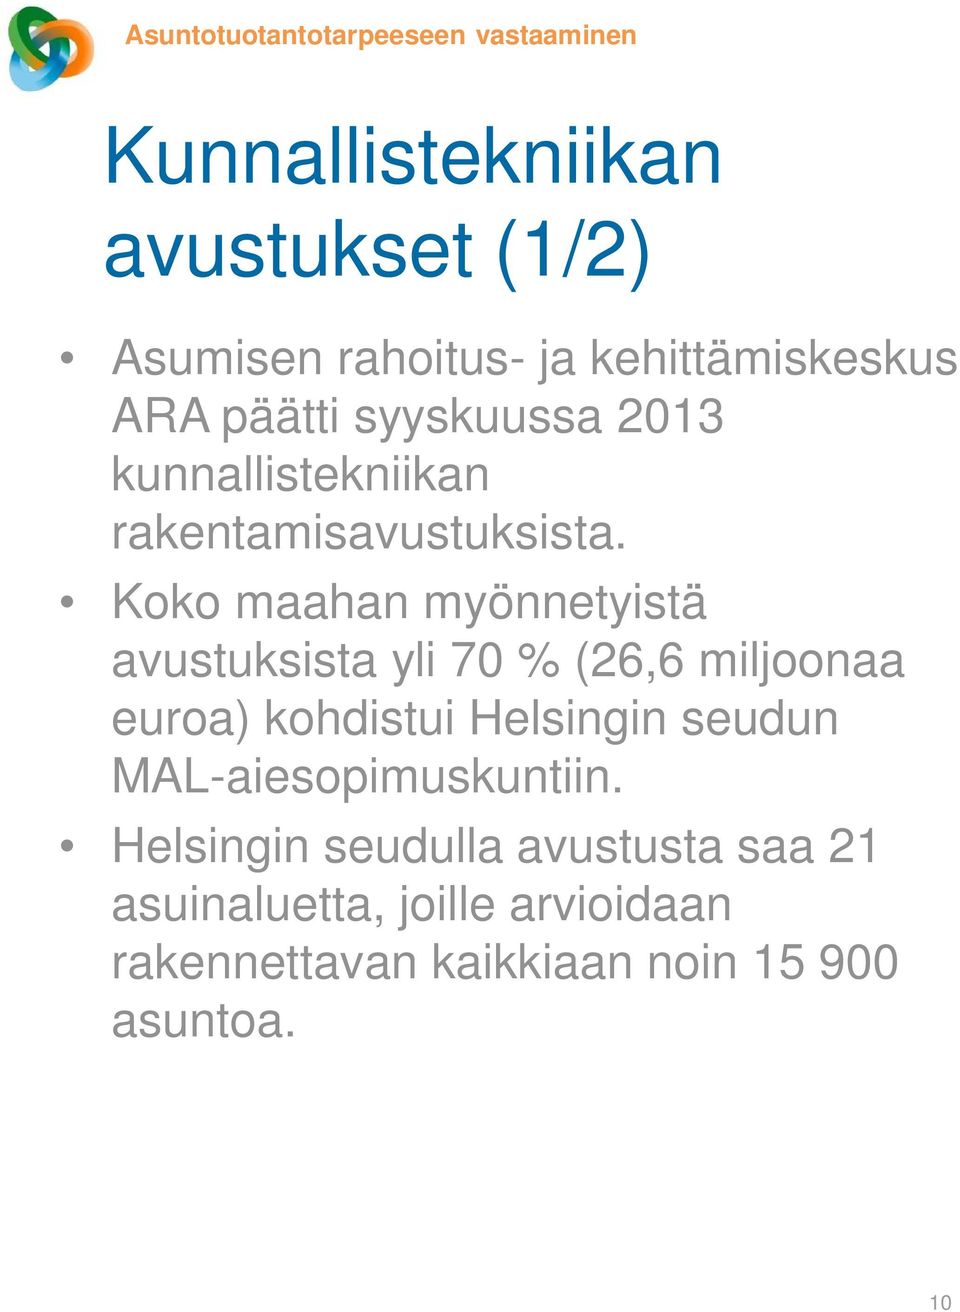 Koko maahan myönnetyistä avustuksista yli 70 % (26,6 miljoonaa euroa) kohdistui Helsingin seudun